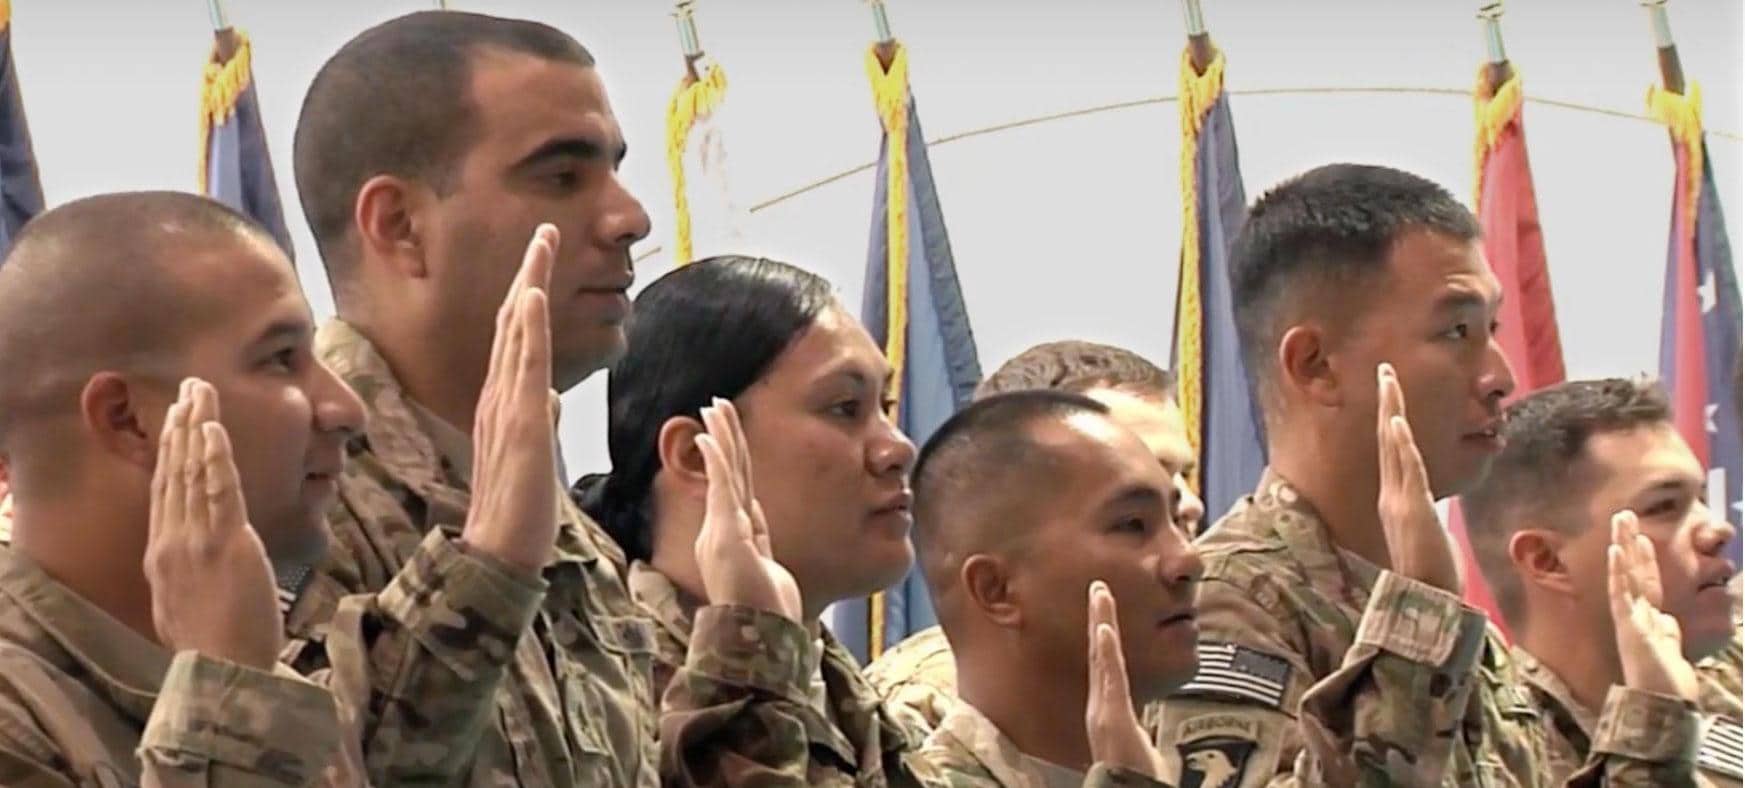 Troops taking an Oath